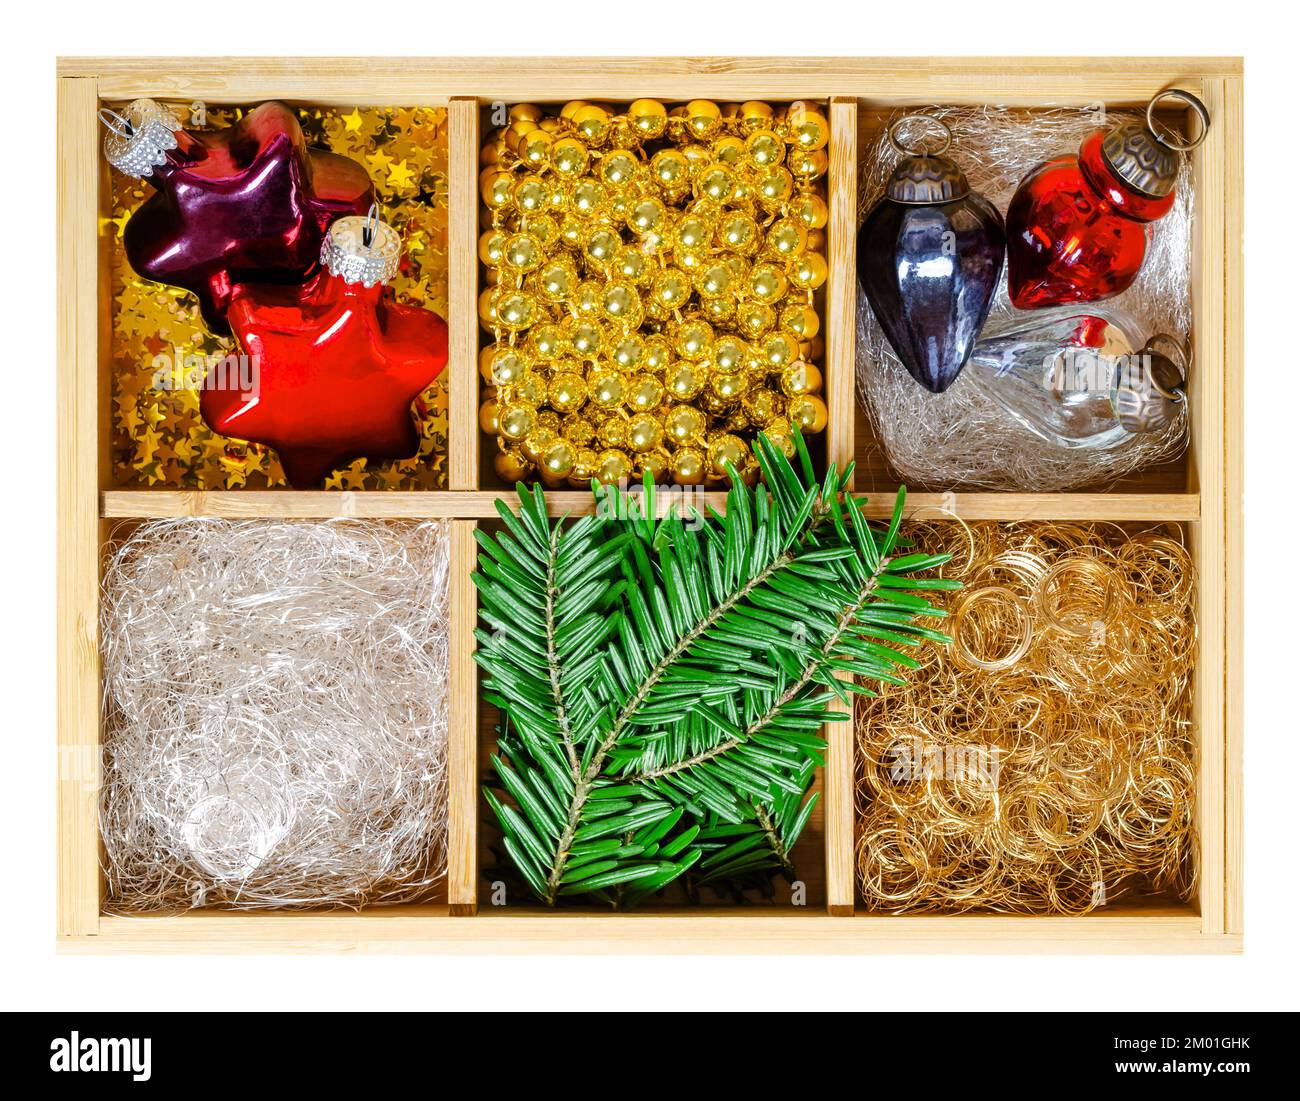 Weihnachtsschmuck in Holzkiste. Stern- und Eichelförmige Weihnachtsglaszwiebeln, silberne und goldene Engelhaare, goldene Perlengürtel und Tannenzweige. Stockfoto